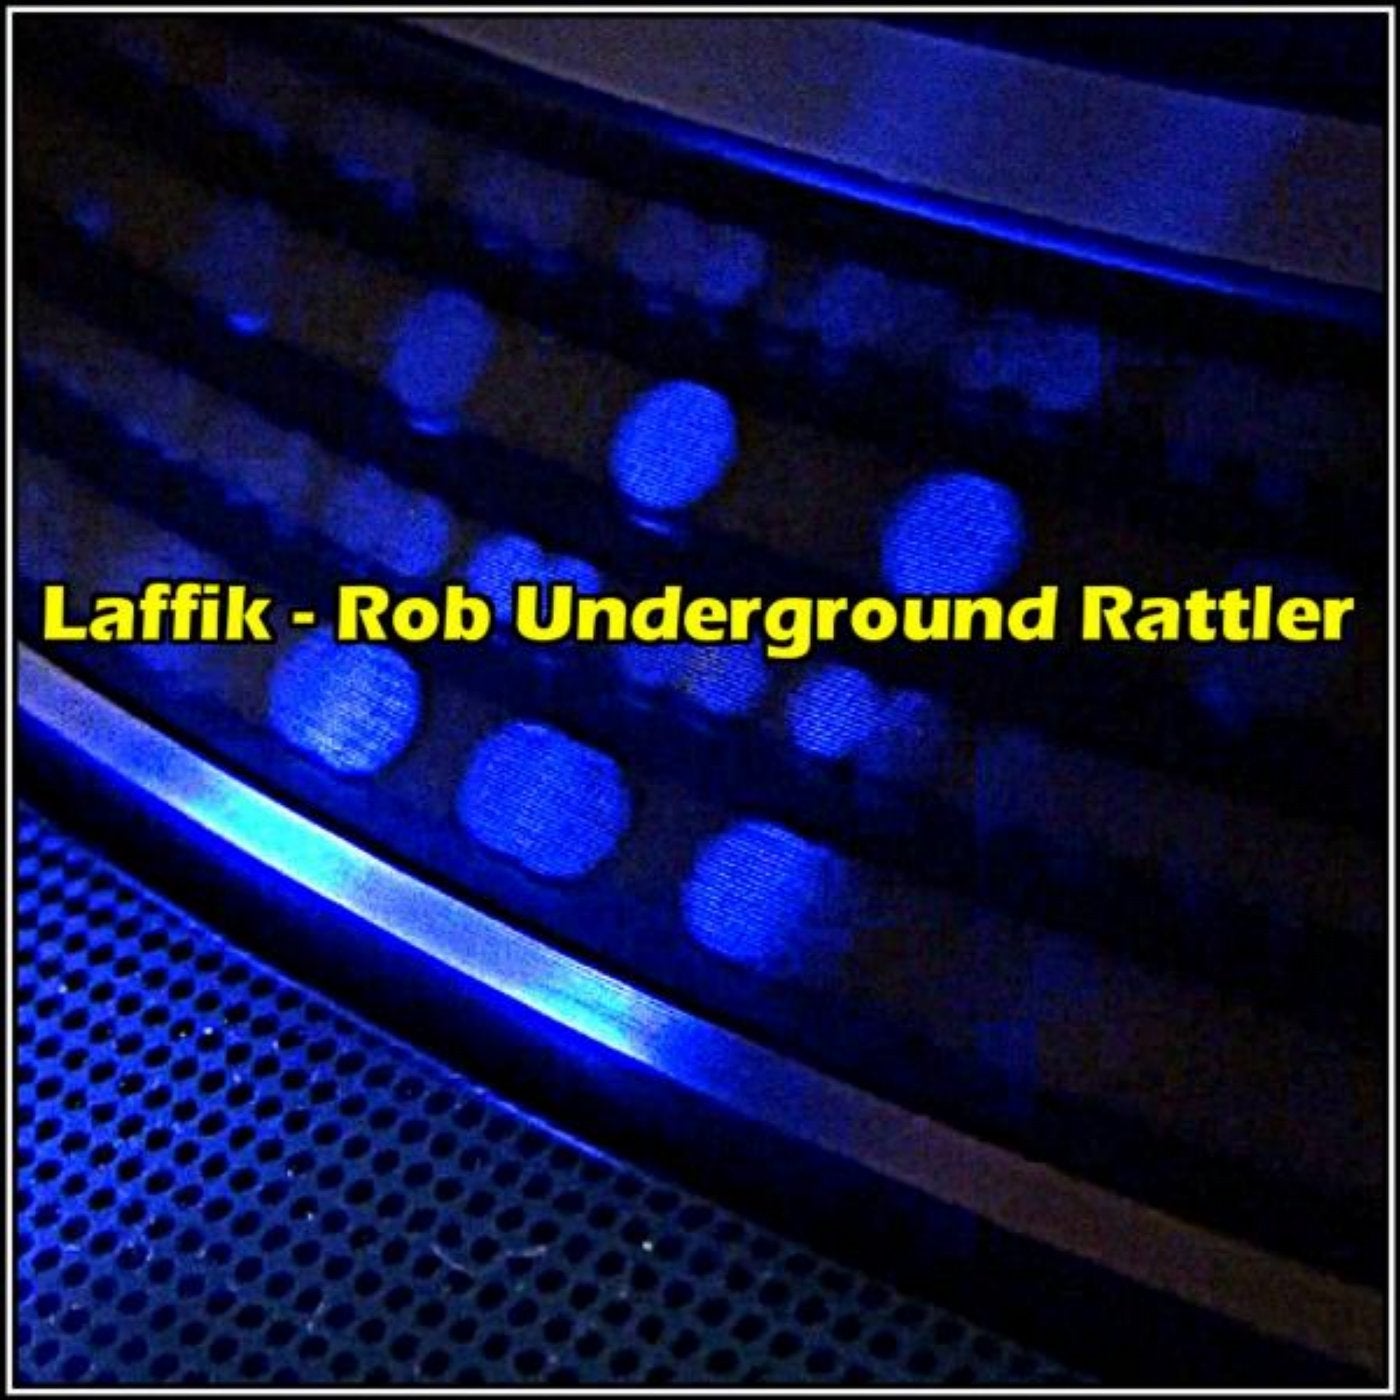 Rob Underground Rattler